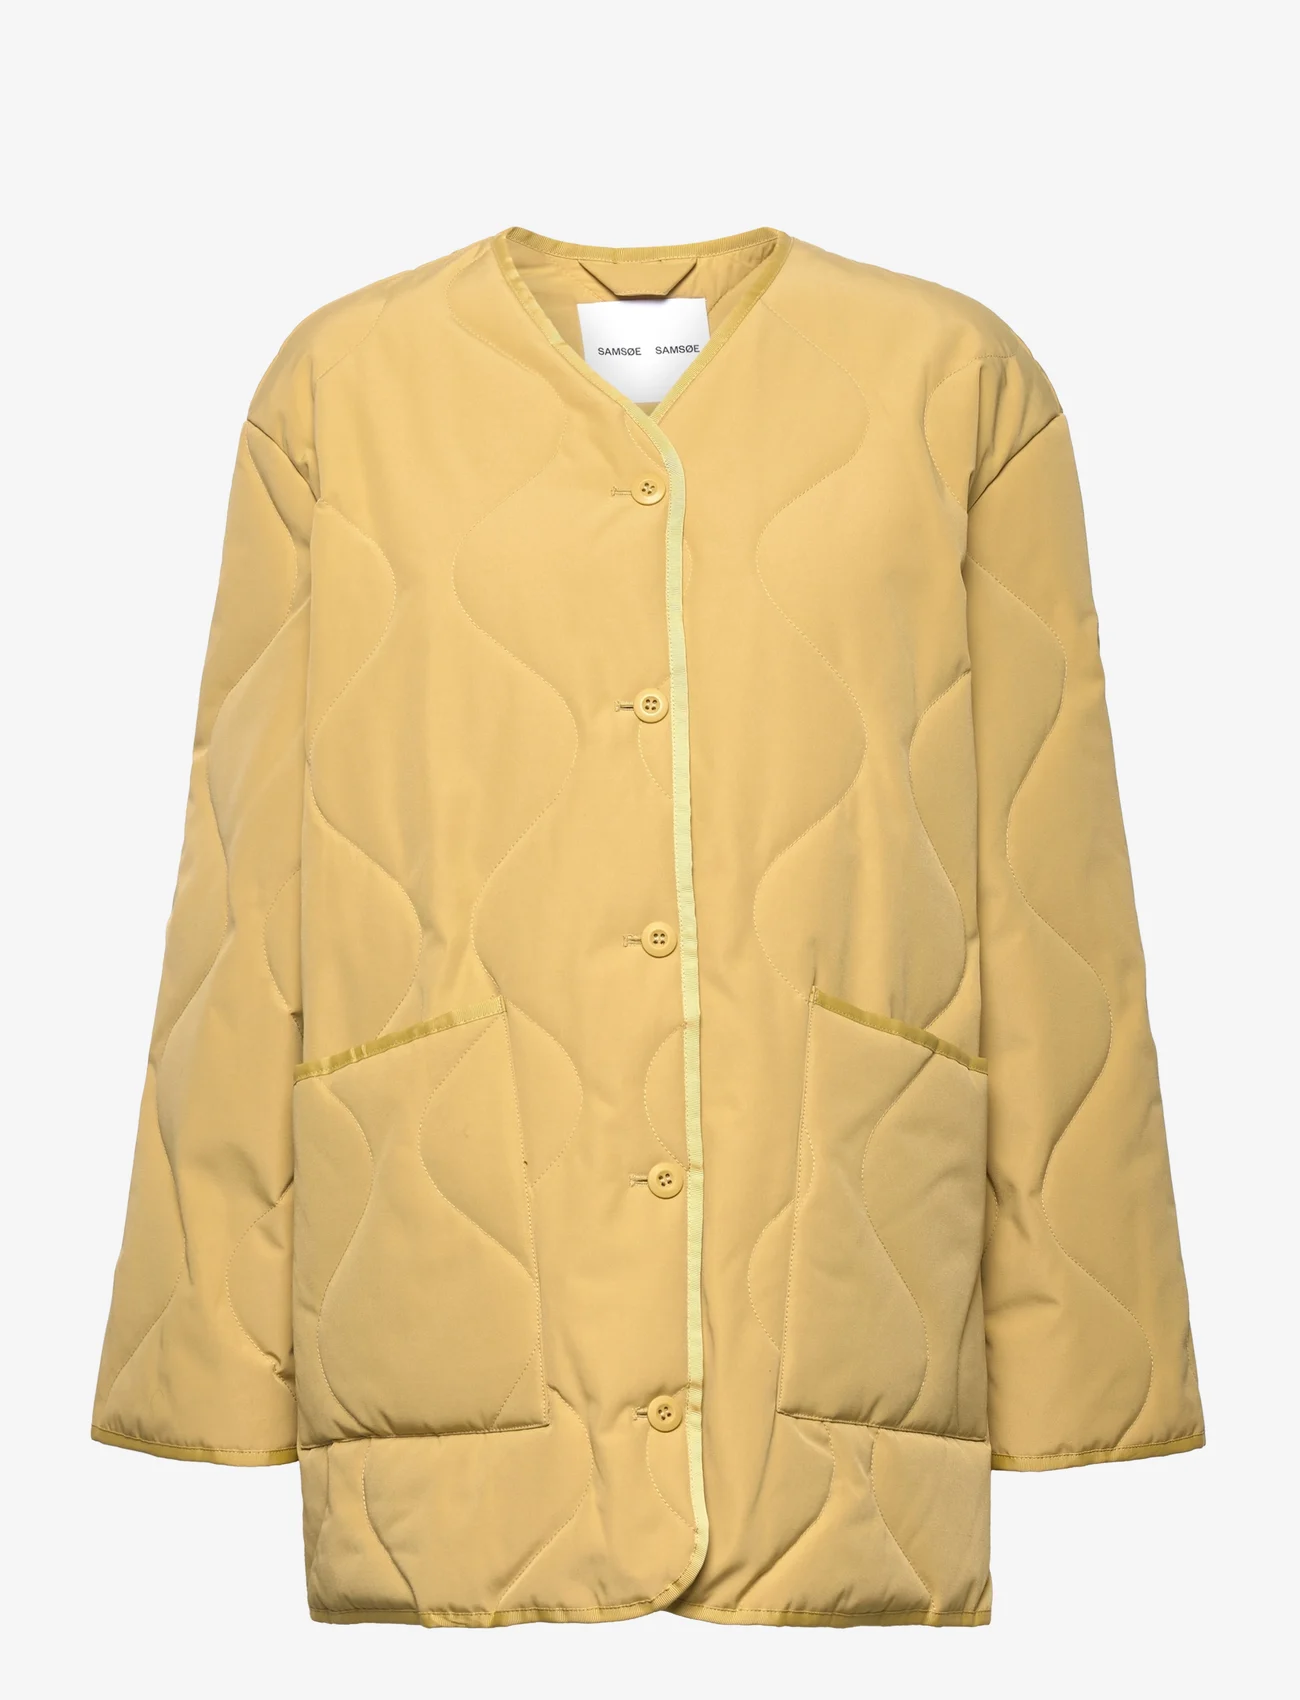 Samsøe Samsøe - Amazony jacket 14414 - forårsjakker - antique gold - 0